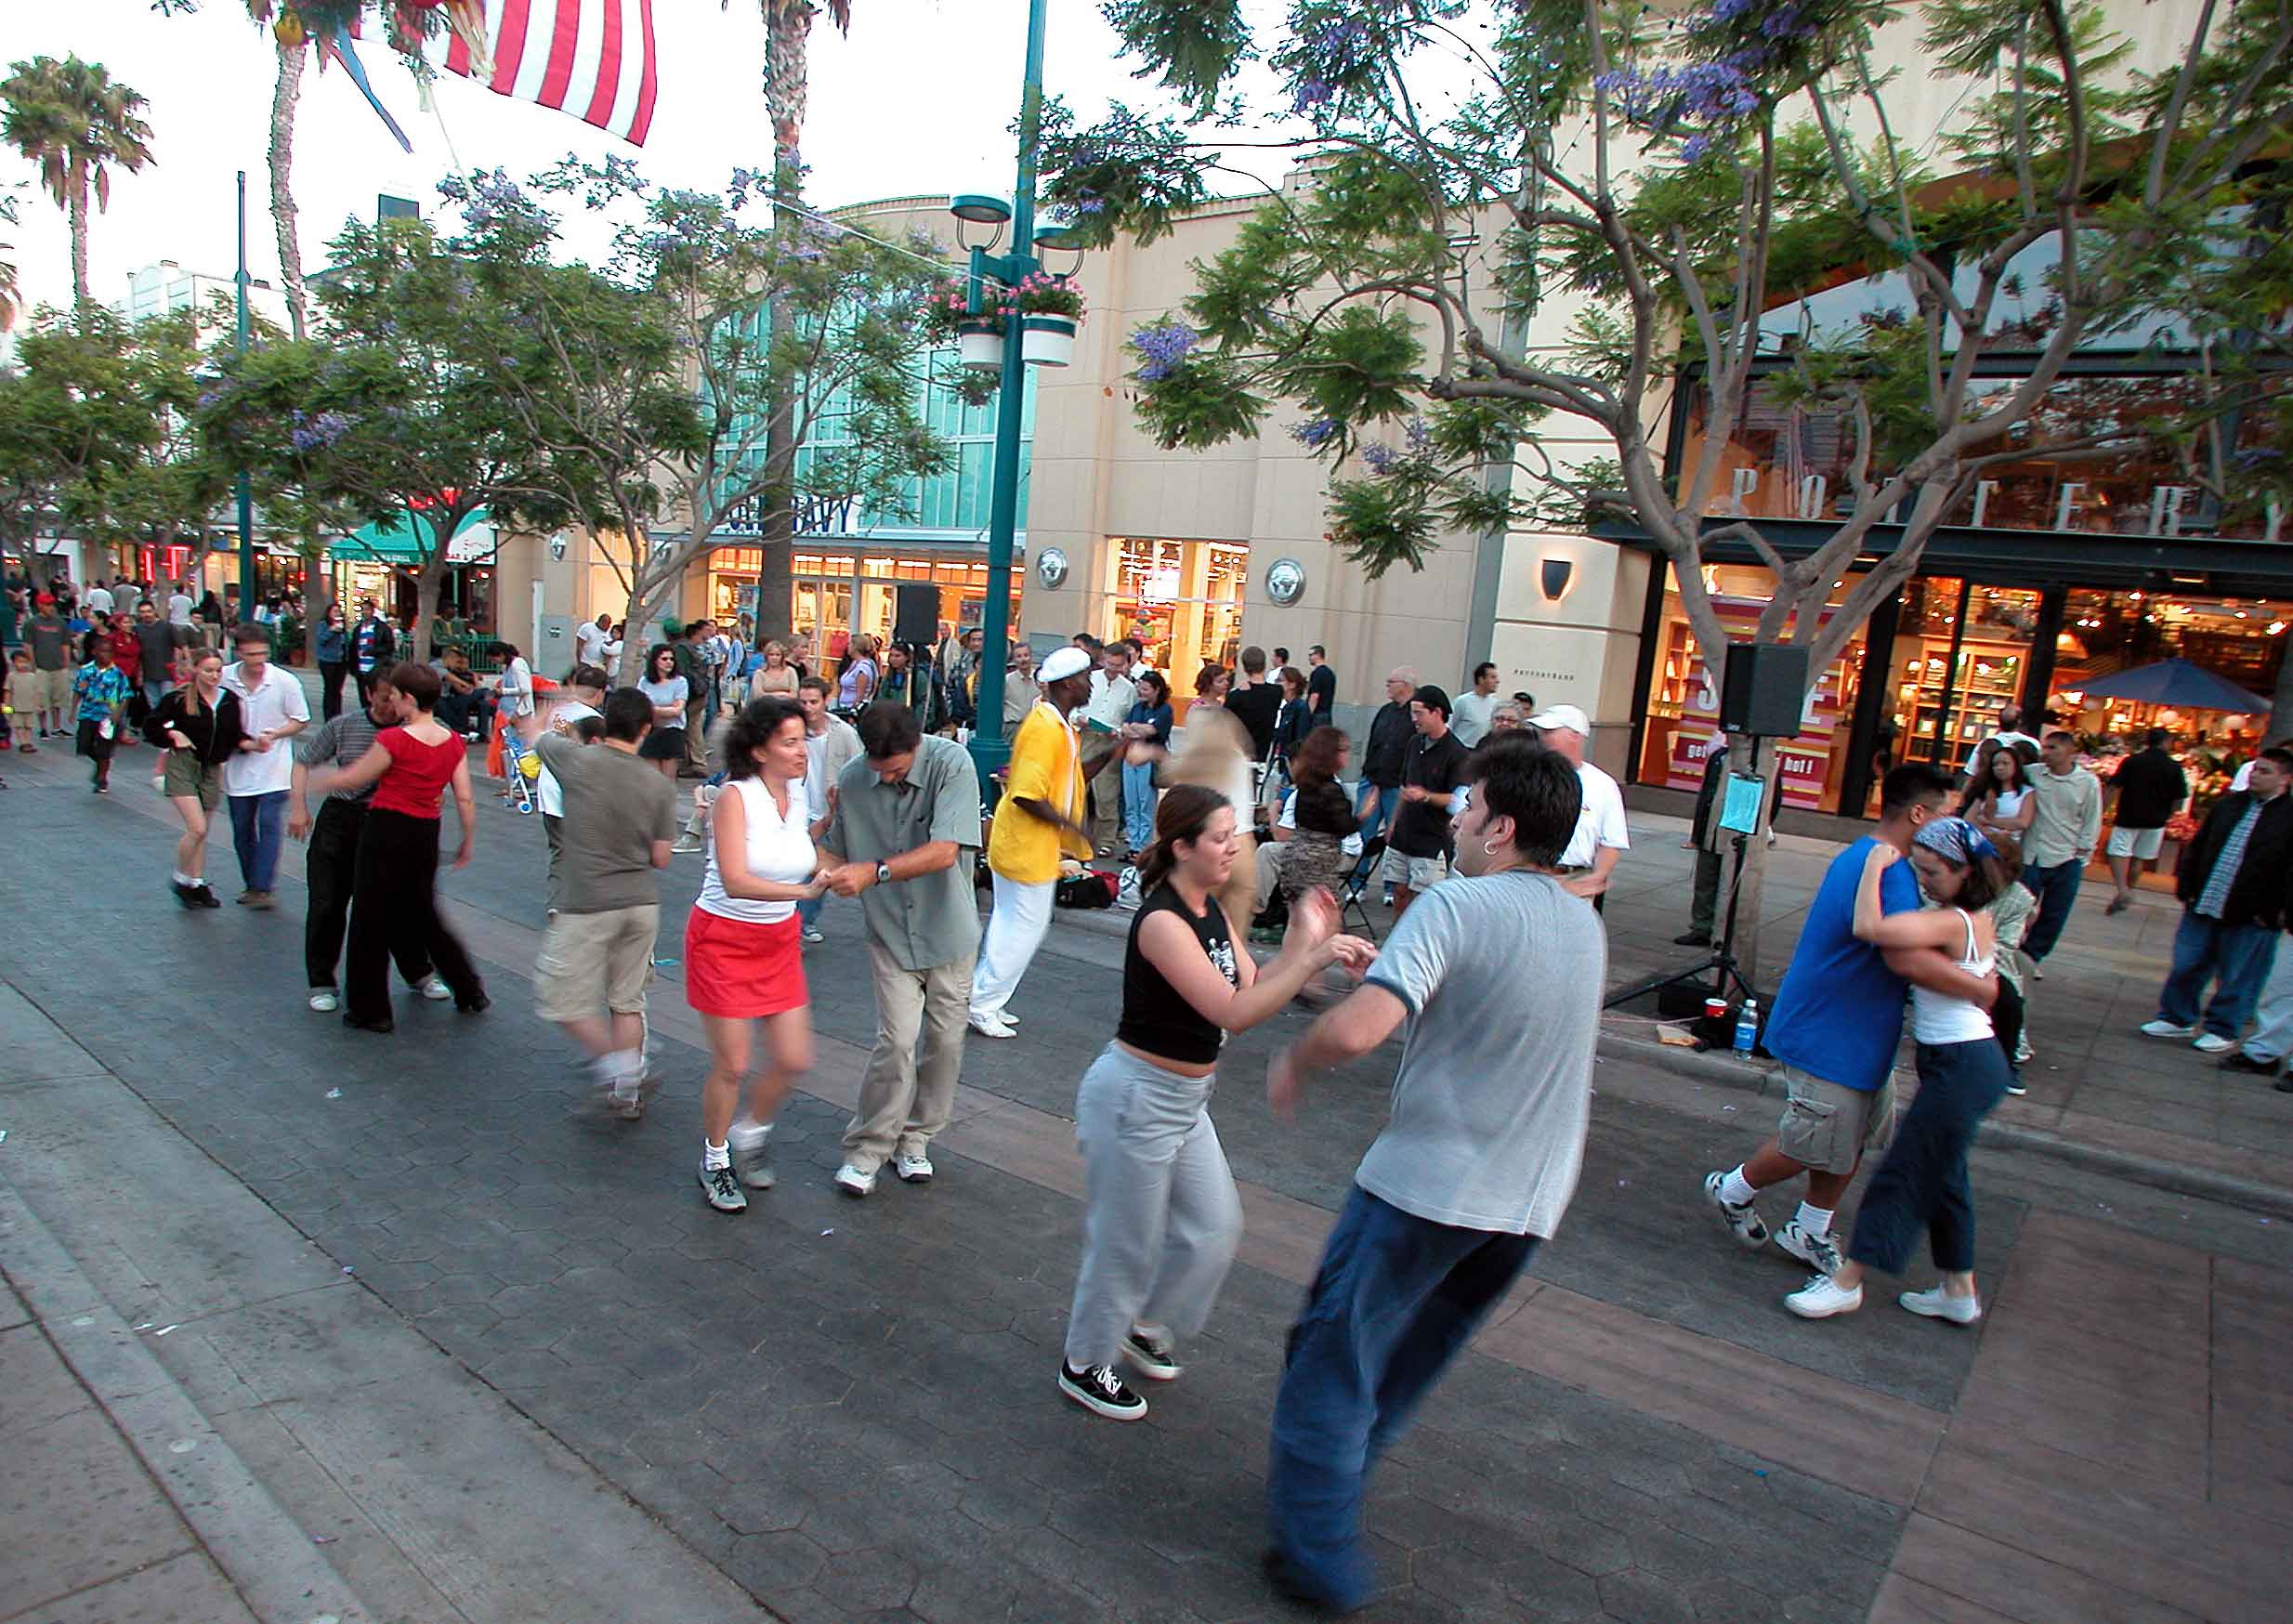 Dancing On the promenade, Santa Monica